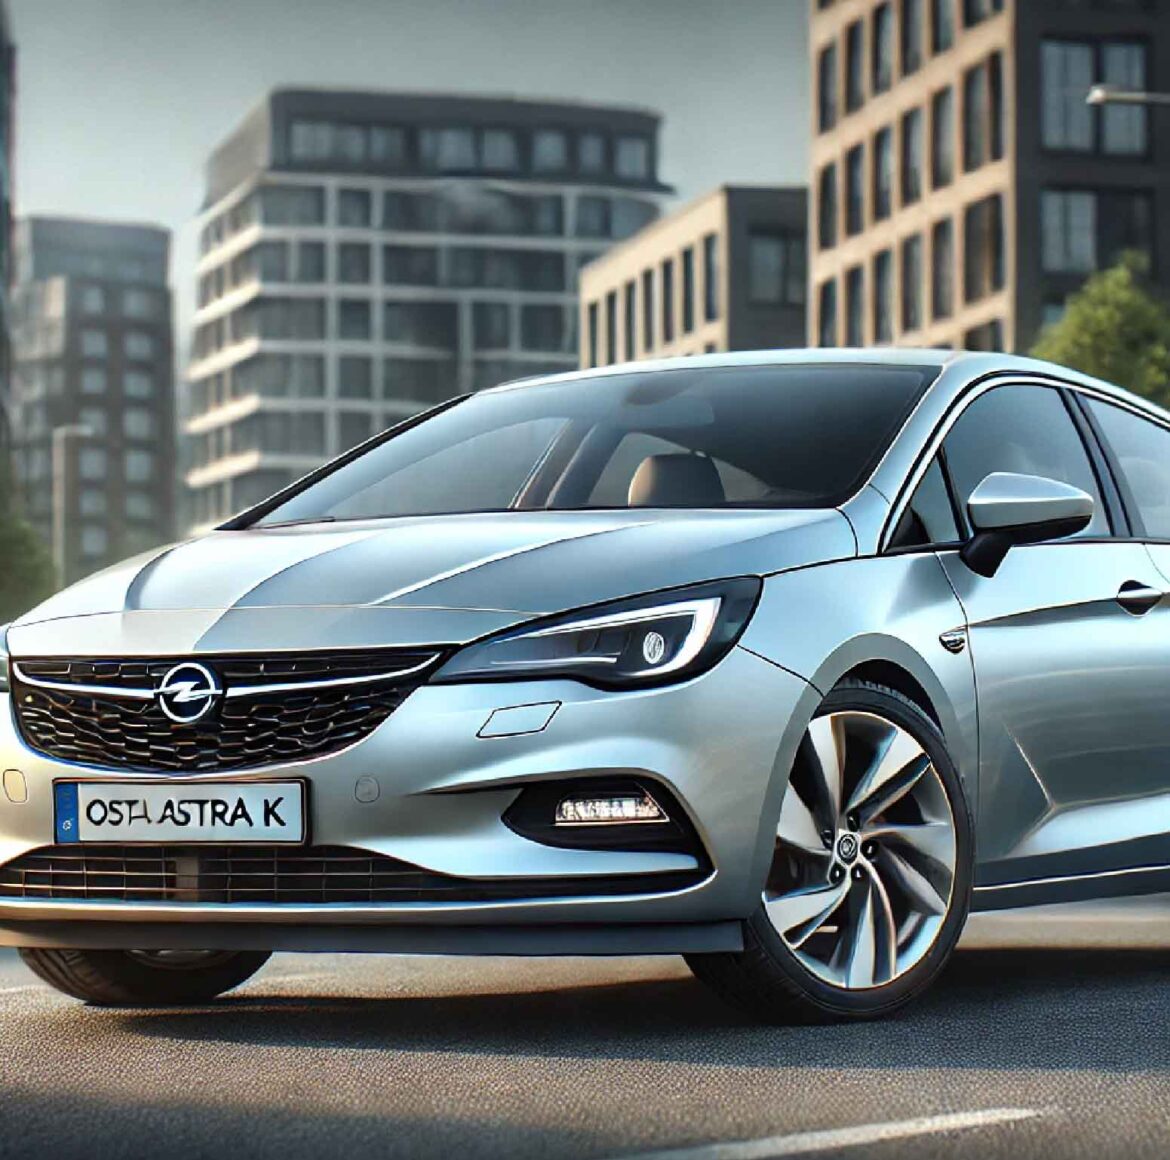 Der Ultimative Leitfaden zum Opel Astra K: 30 Dinge, die Sie Wissen Müssen